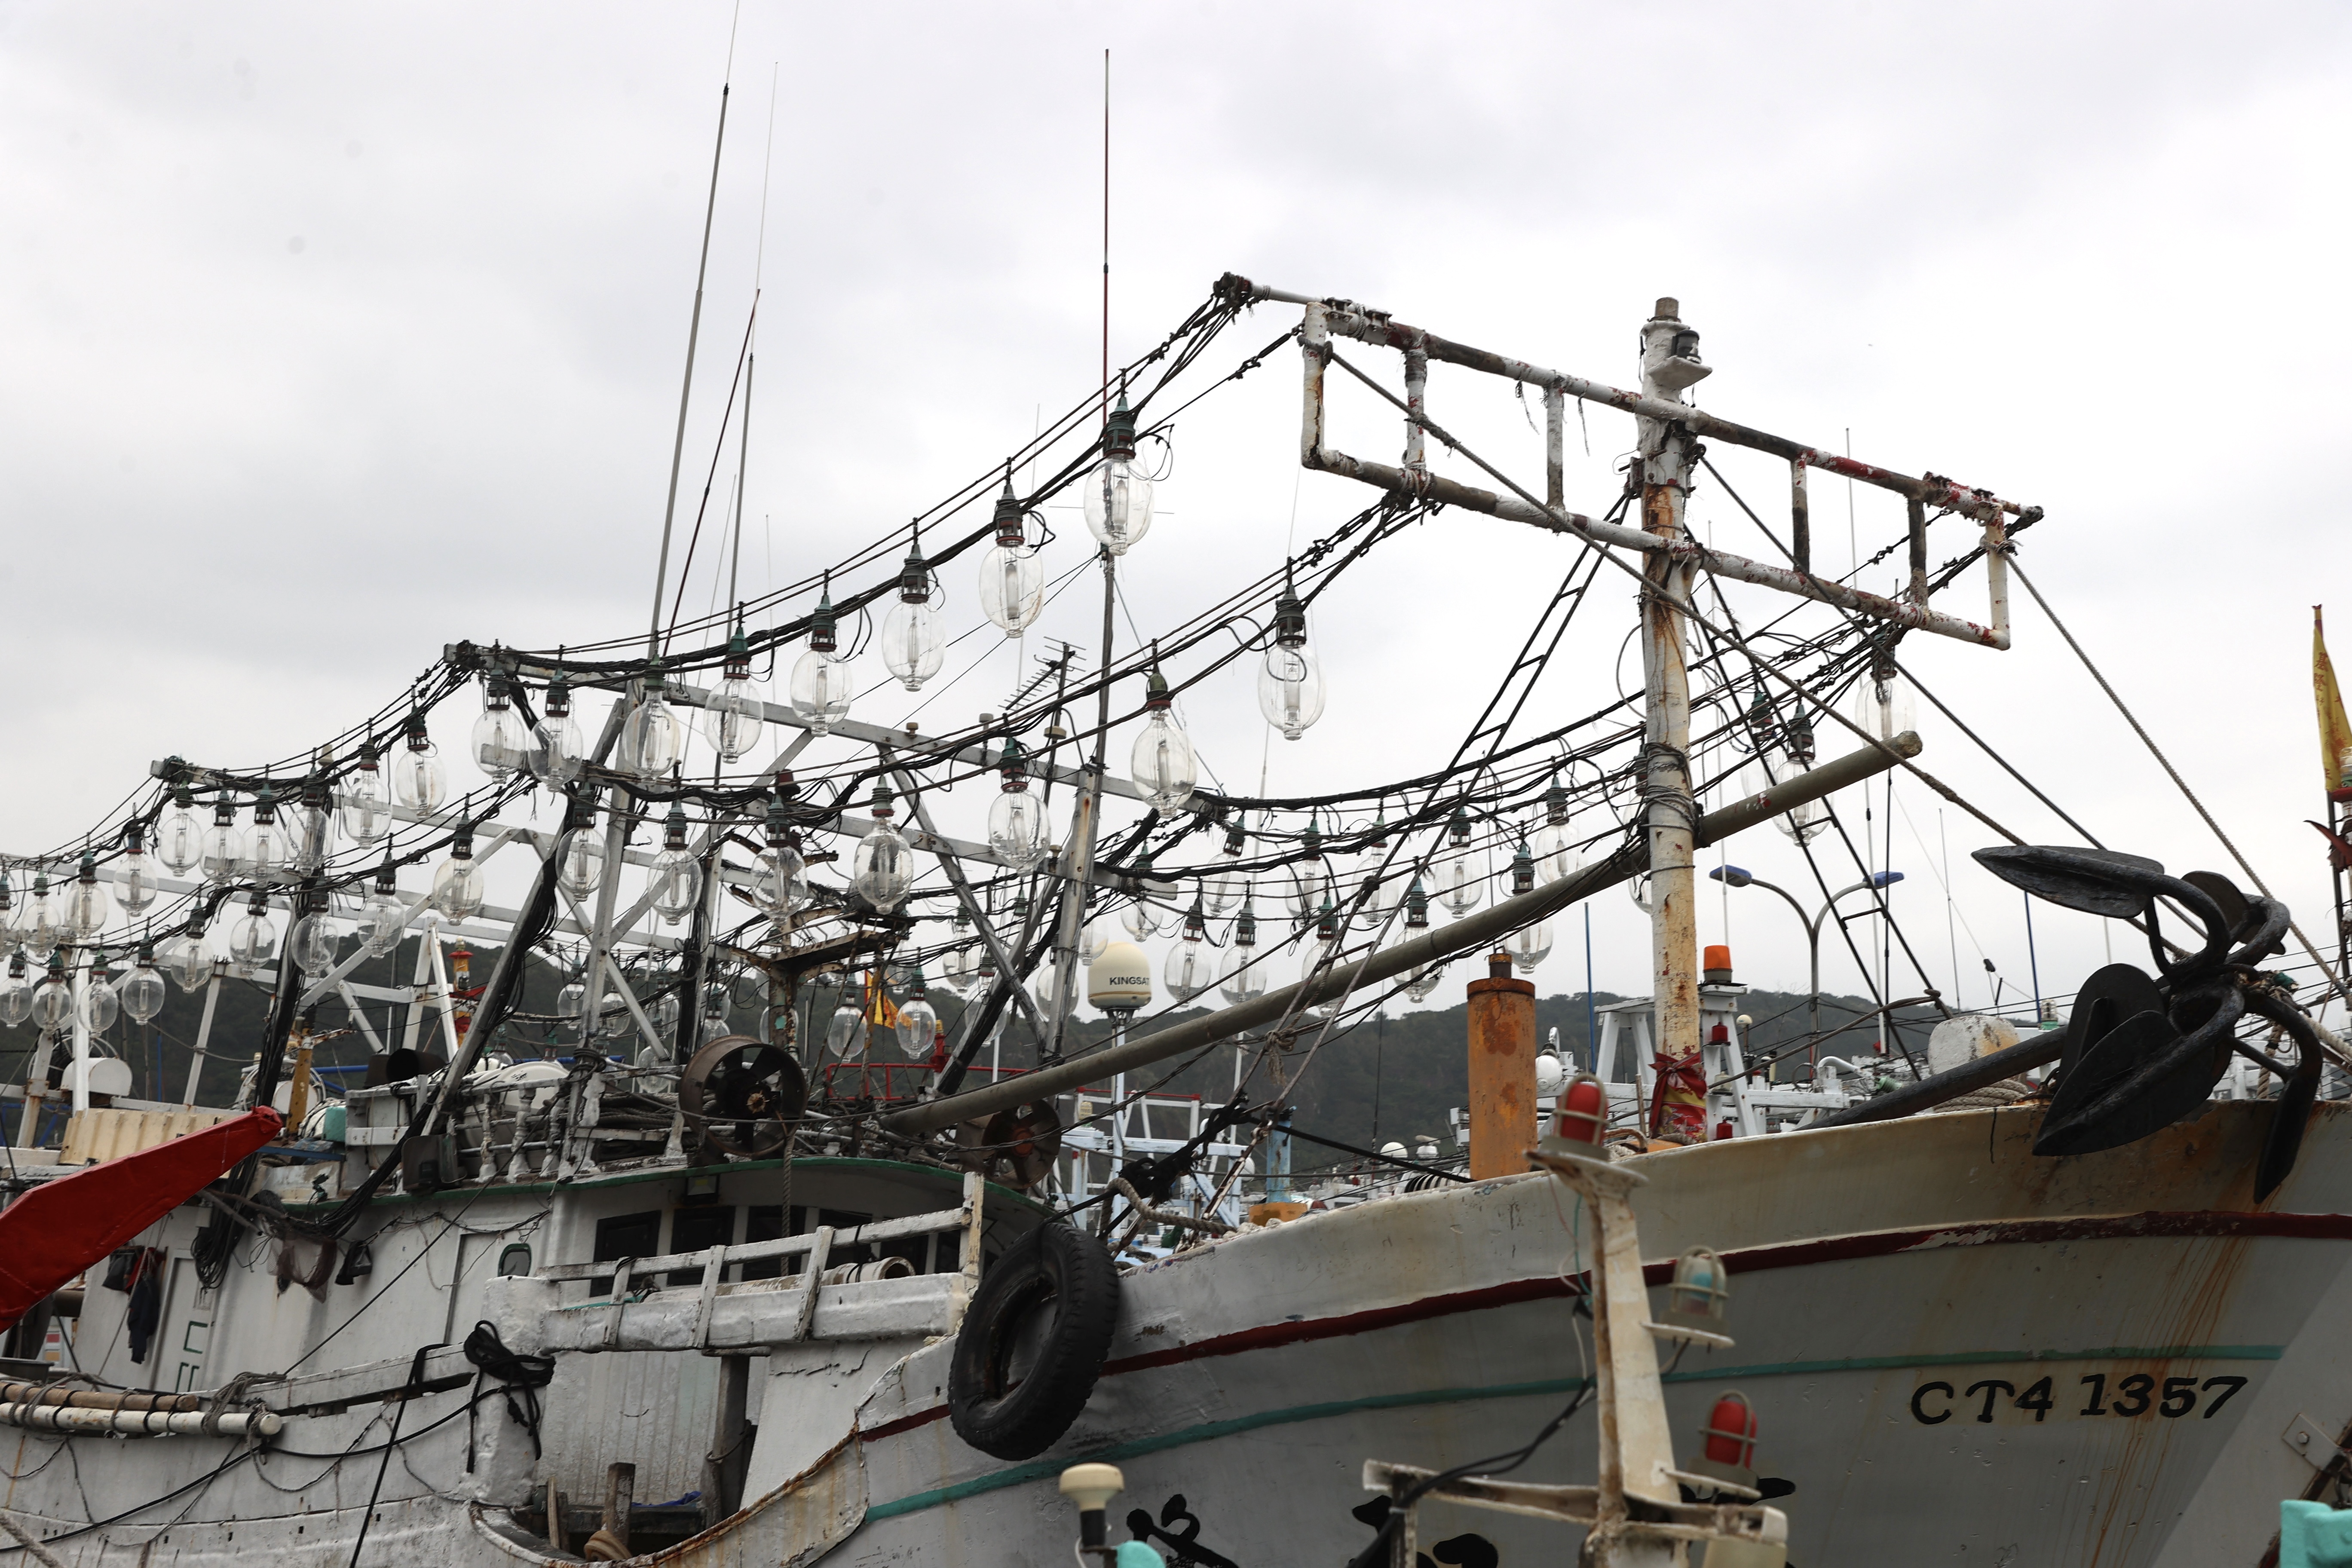 基隆市东北部的八斗子渔港边，一艘艘渔船挂著各式的集鱼灯。「只要看集鱼灯，就知道这艘船是专门补什么鱼」。记者林伯东／摄影